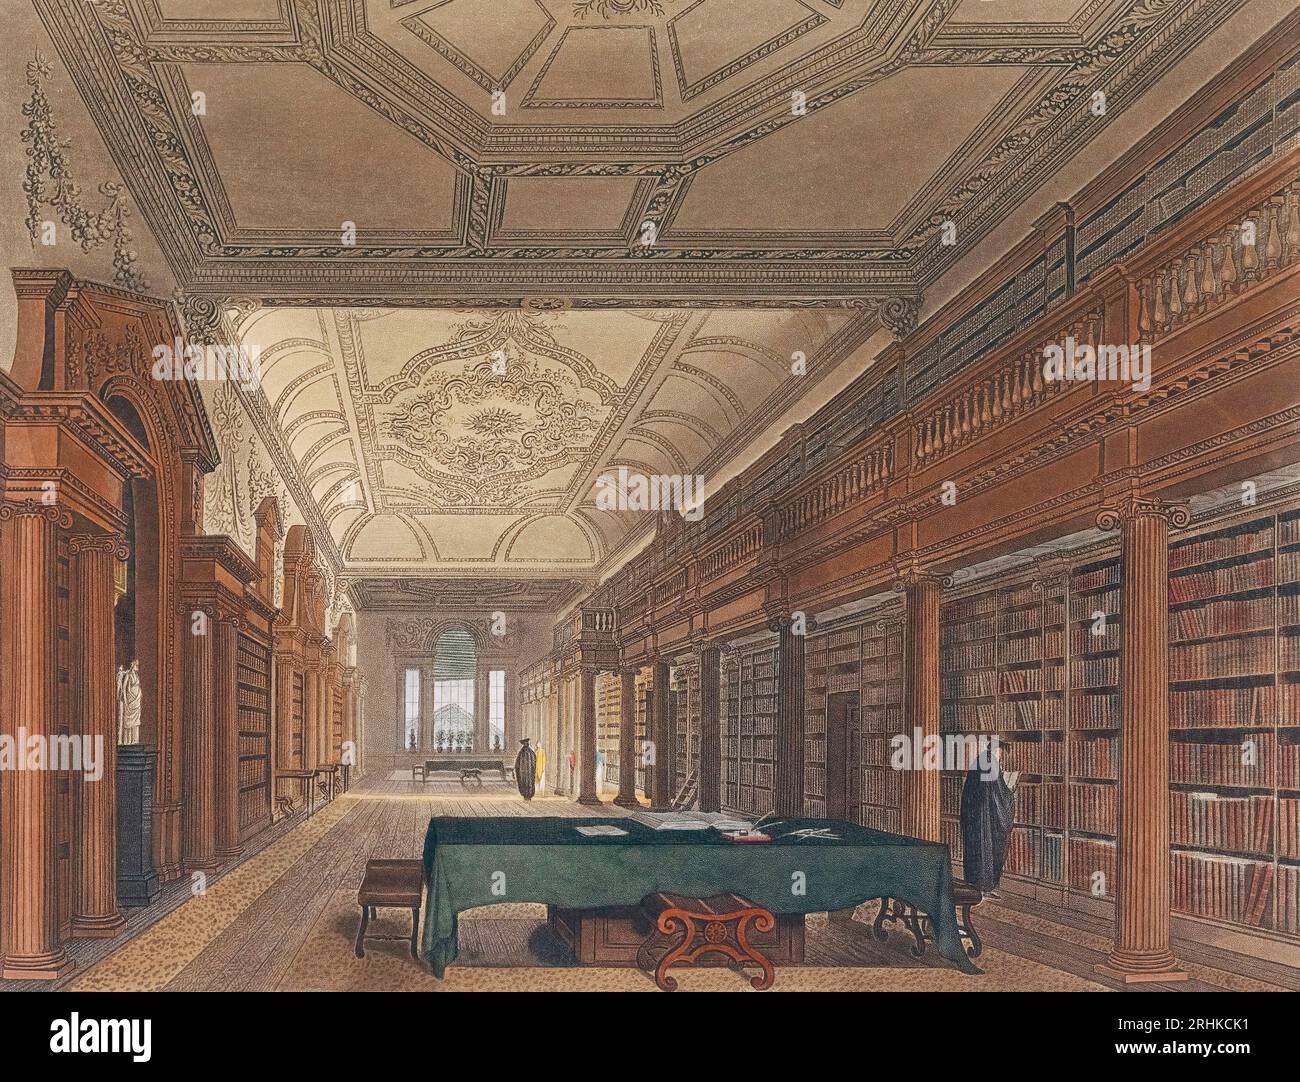 Die Bibliothek der Christ Church in Oxford, England zu Beginn des 19. Jahrhunderts. Nach einem Druck von Joseph Constantine Stadler aus einem Werk von Frederick Mackenzie. Spätere Kolorisation. Stockfoto